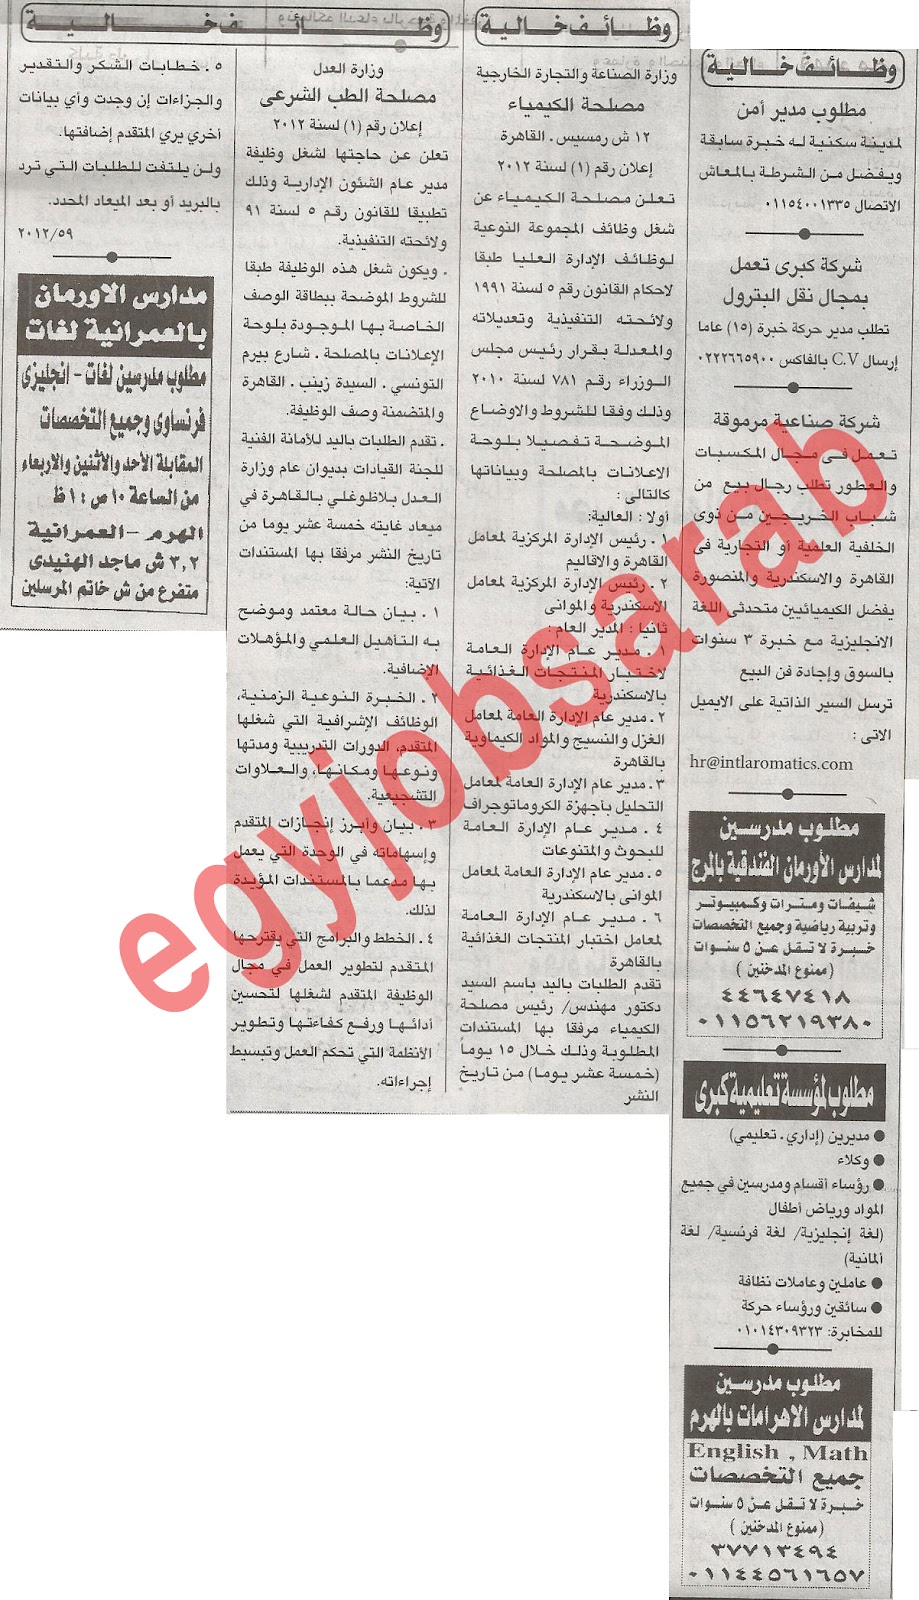 اعلانات وظائف جريدة الاهرام الاحد 8/7/2012 - وظائف مصر %D8%A7%D9%84%D8%A7%D9%87%D8%B1%D8%A7%D9%85+2